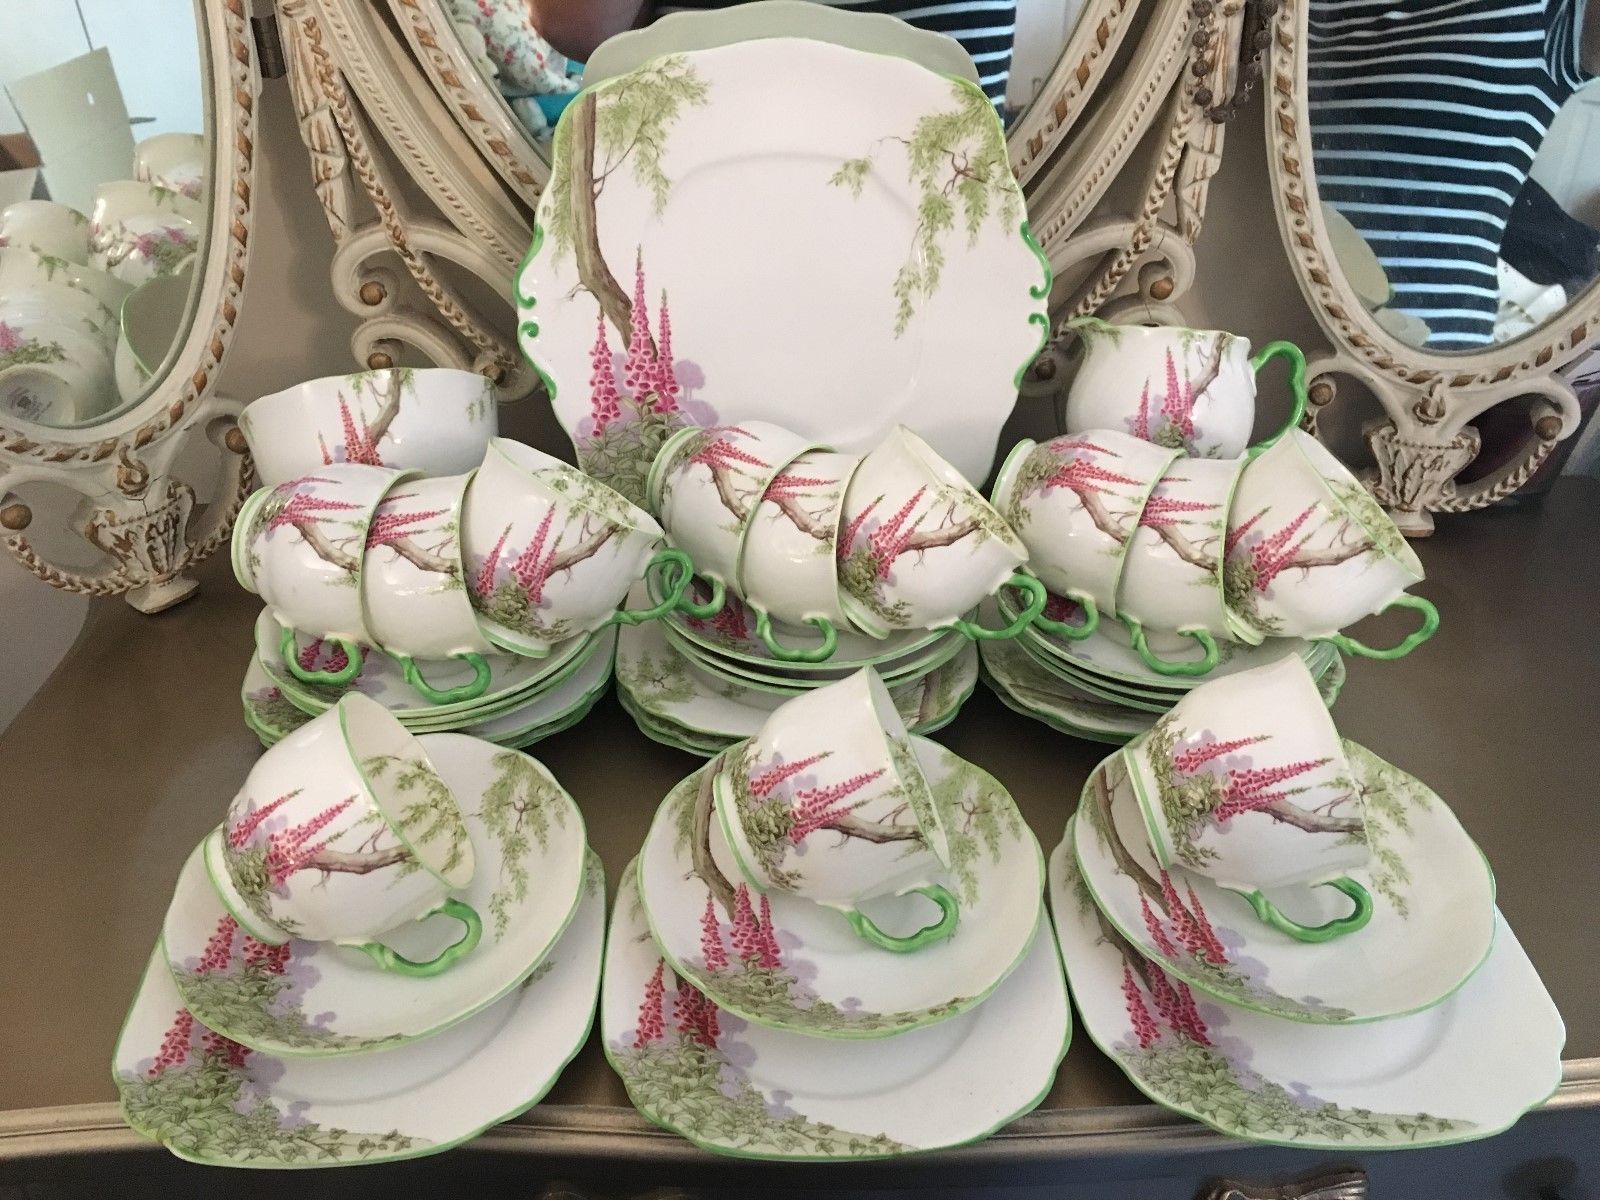 Set de thé Royal Albert : les plus belles collections récemment vendues sur eBay